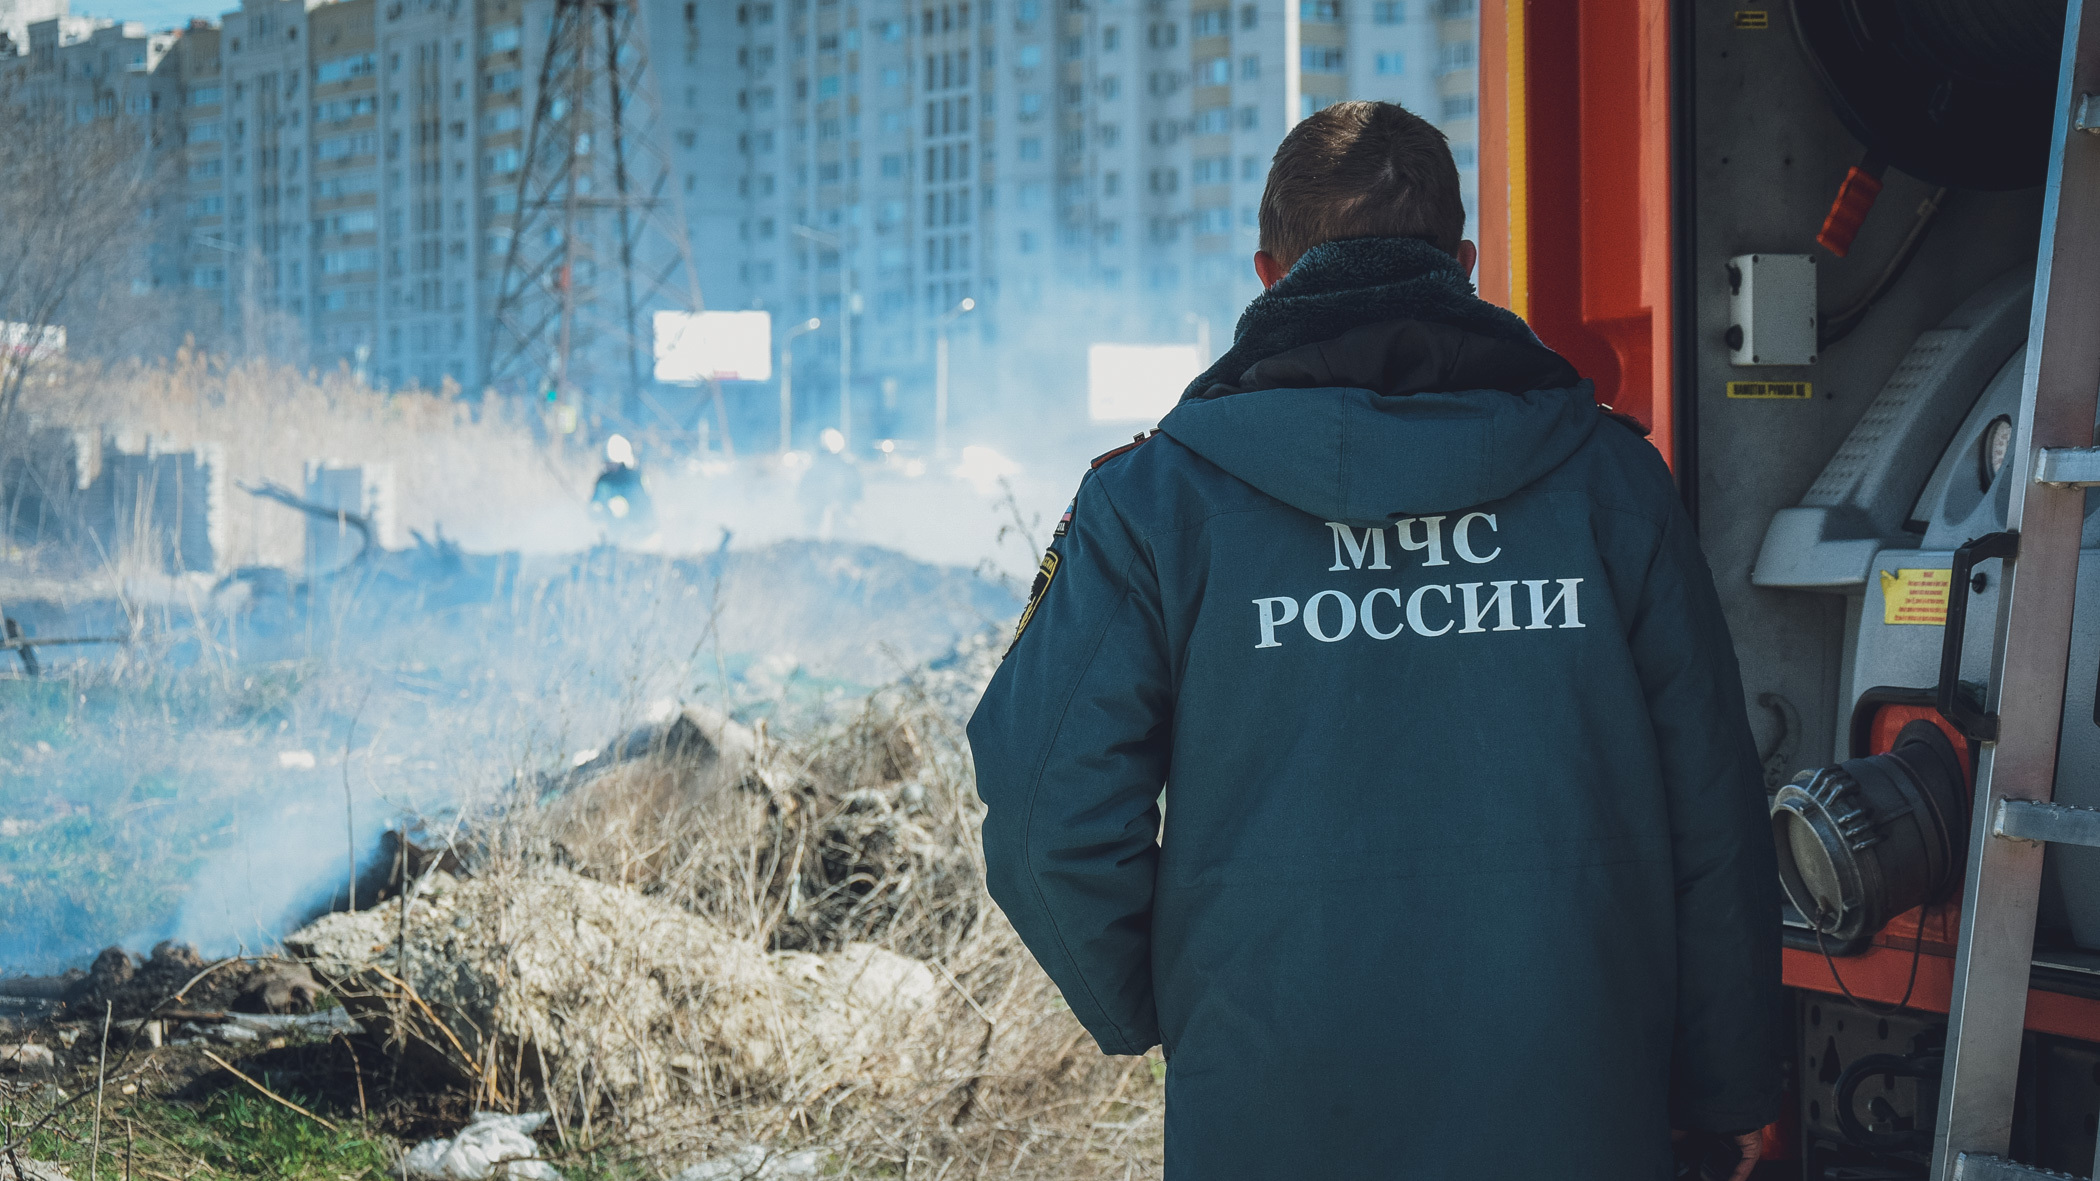 Власти Ставрополья отказались помочь семье спасателя МЧС, которому грозят выселением